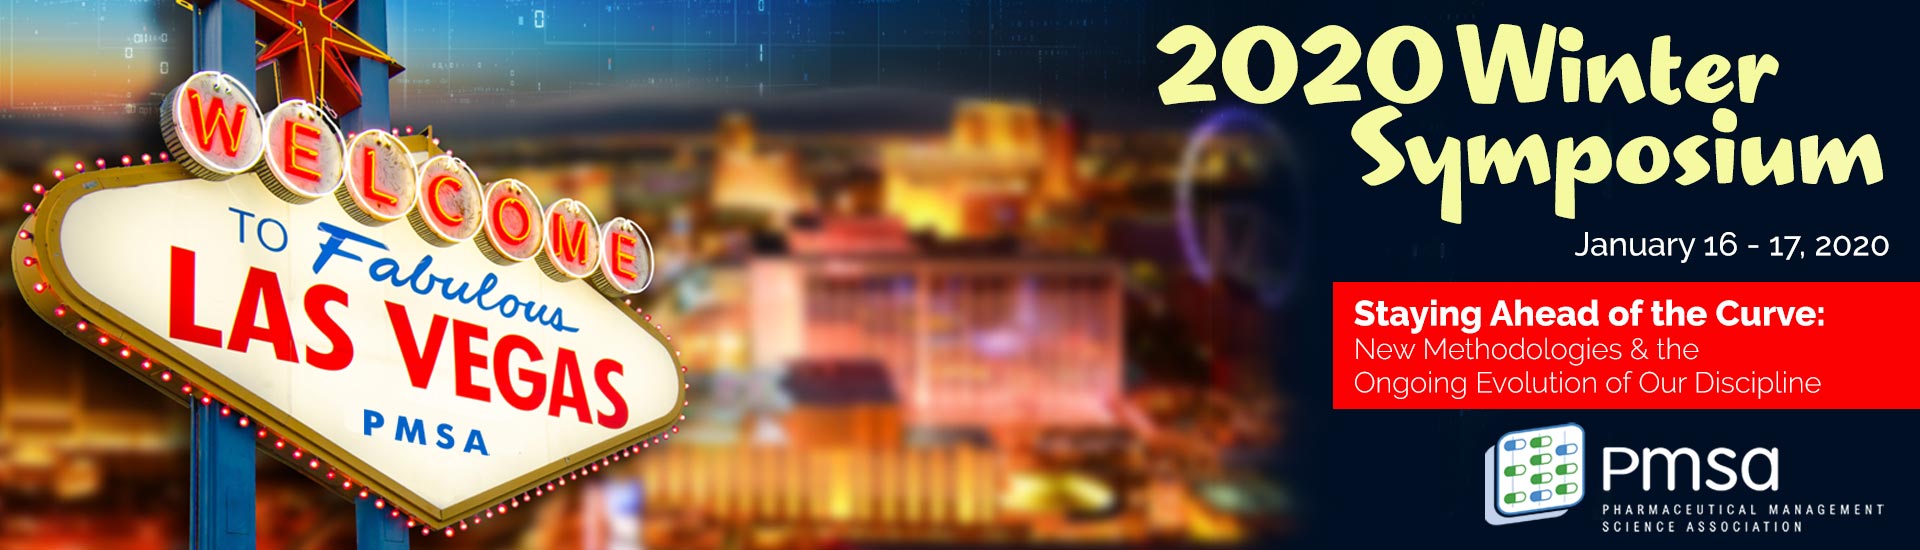 2020 Winter Symposium • Las Vegas, Nevada • January 16-17